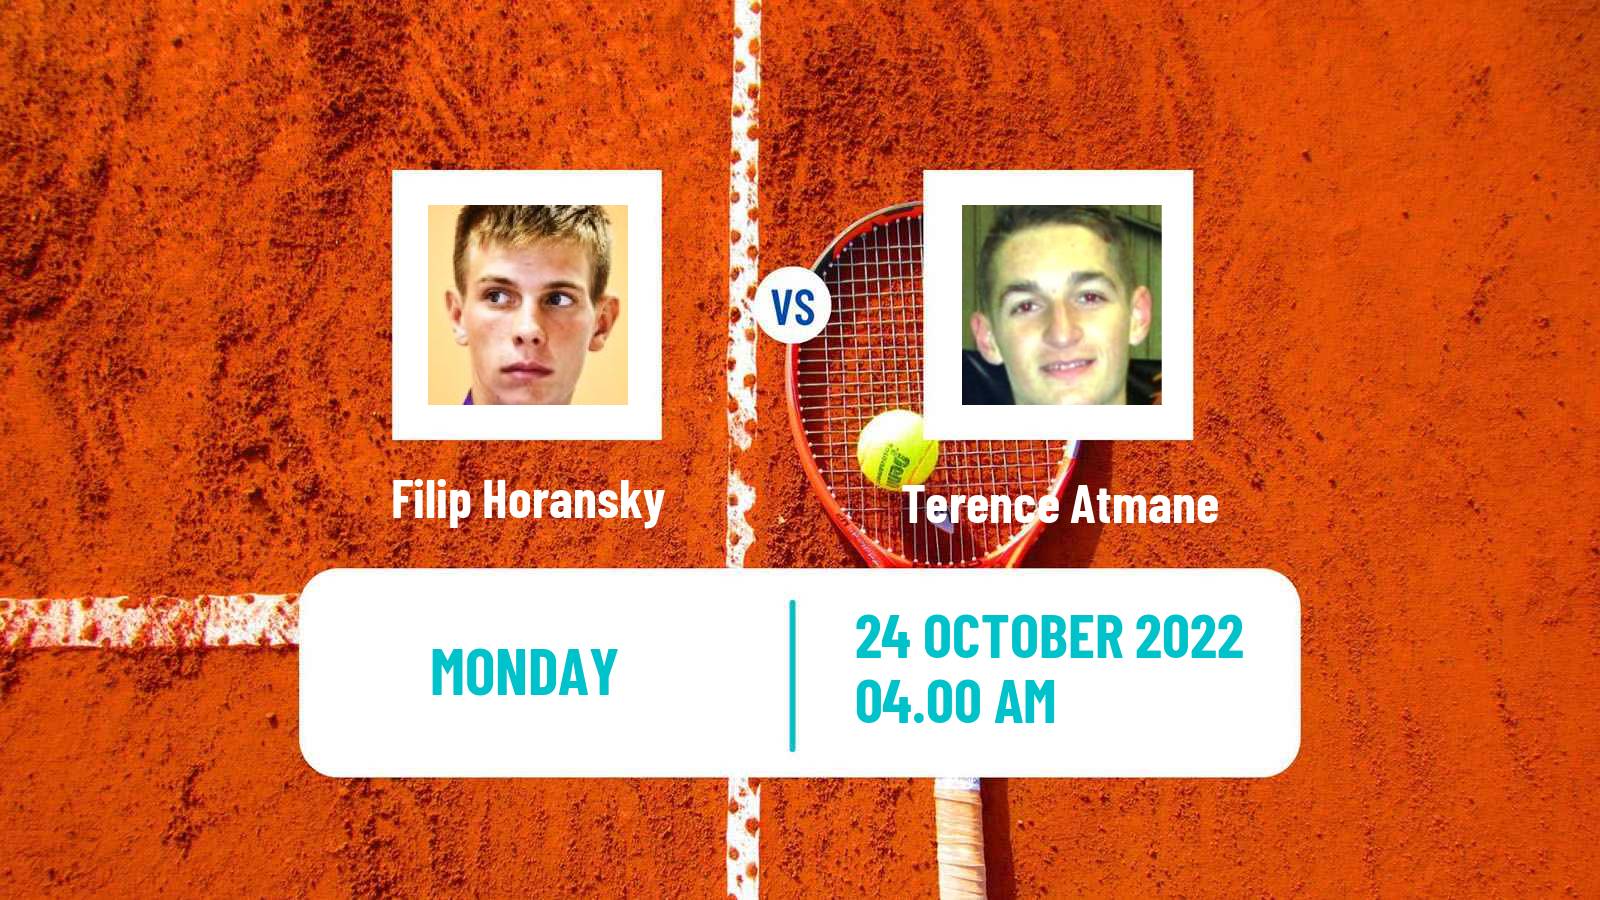 Tennis ATP Challenger Filip Horansky - Terence Atmane